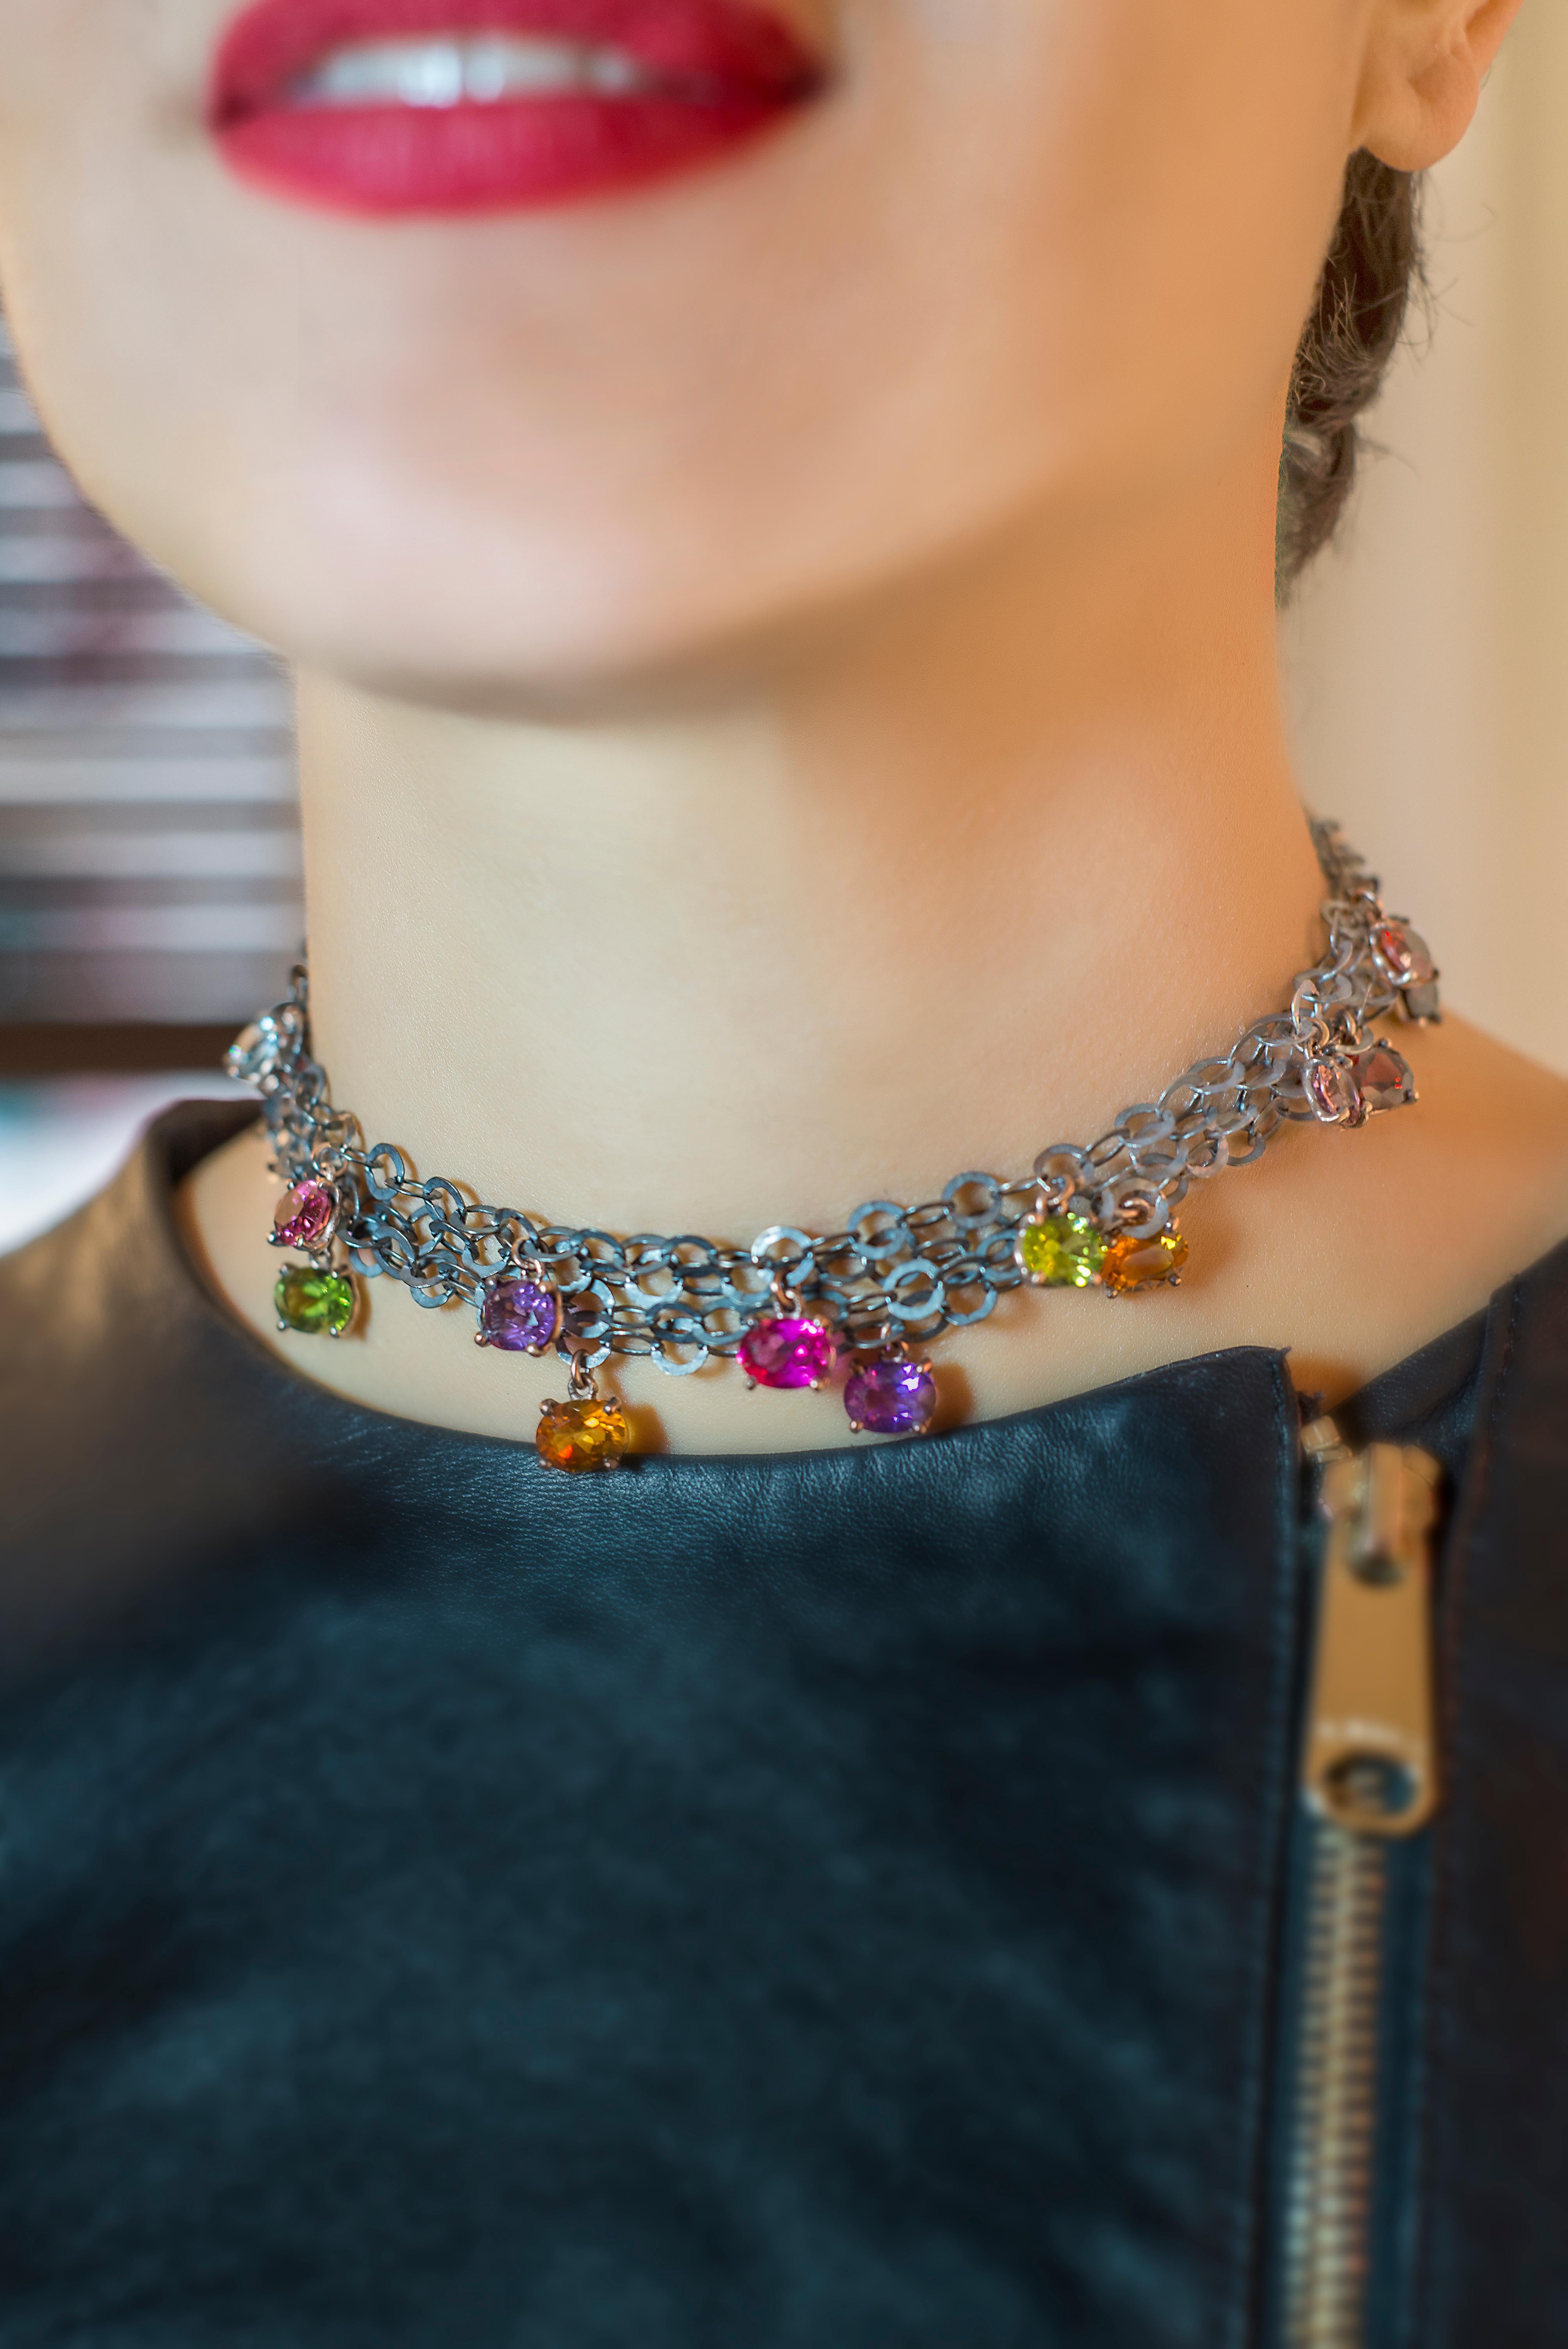 Le superbe collier ras-de-cou Design/One est une véritable œuvre d'art, fabriquée à la main en Italie. 
La chaîne à maillons en argent bruni s'harmonise parfaitement avec les pierres pendantes aux couleurs vives, dont l'améthyste, la tourmaline, la